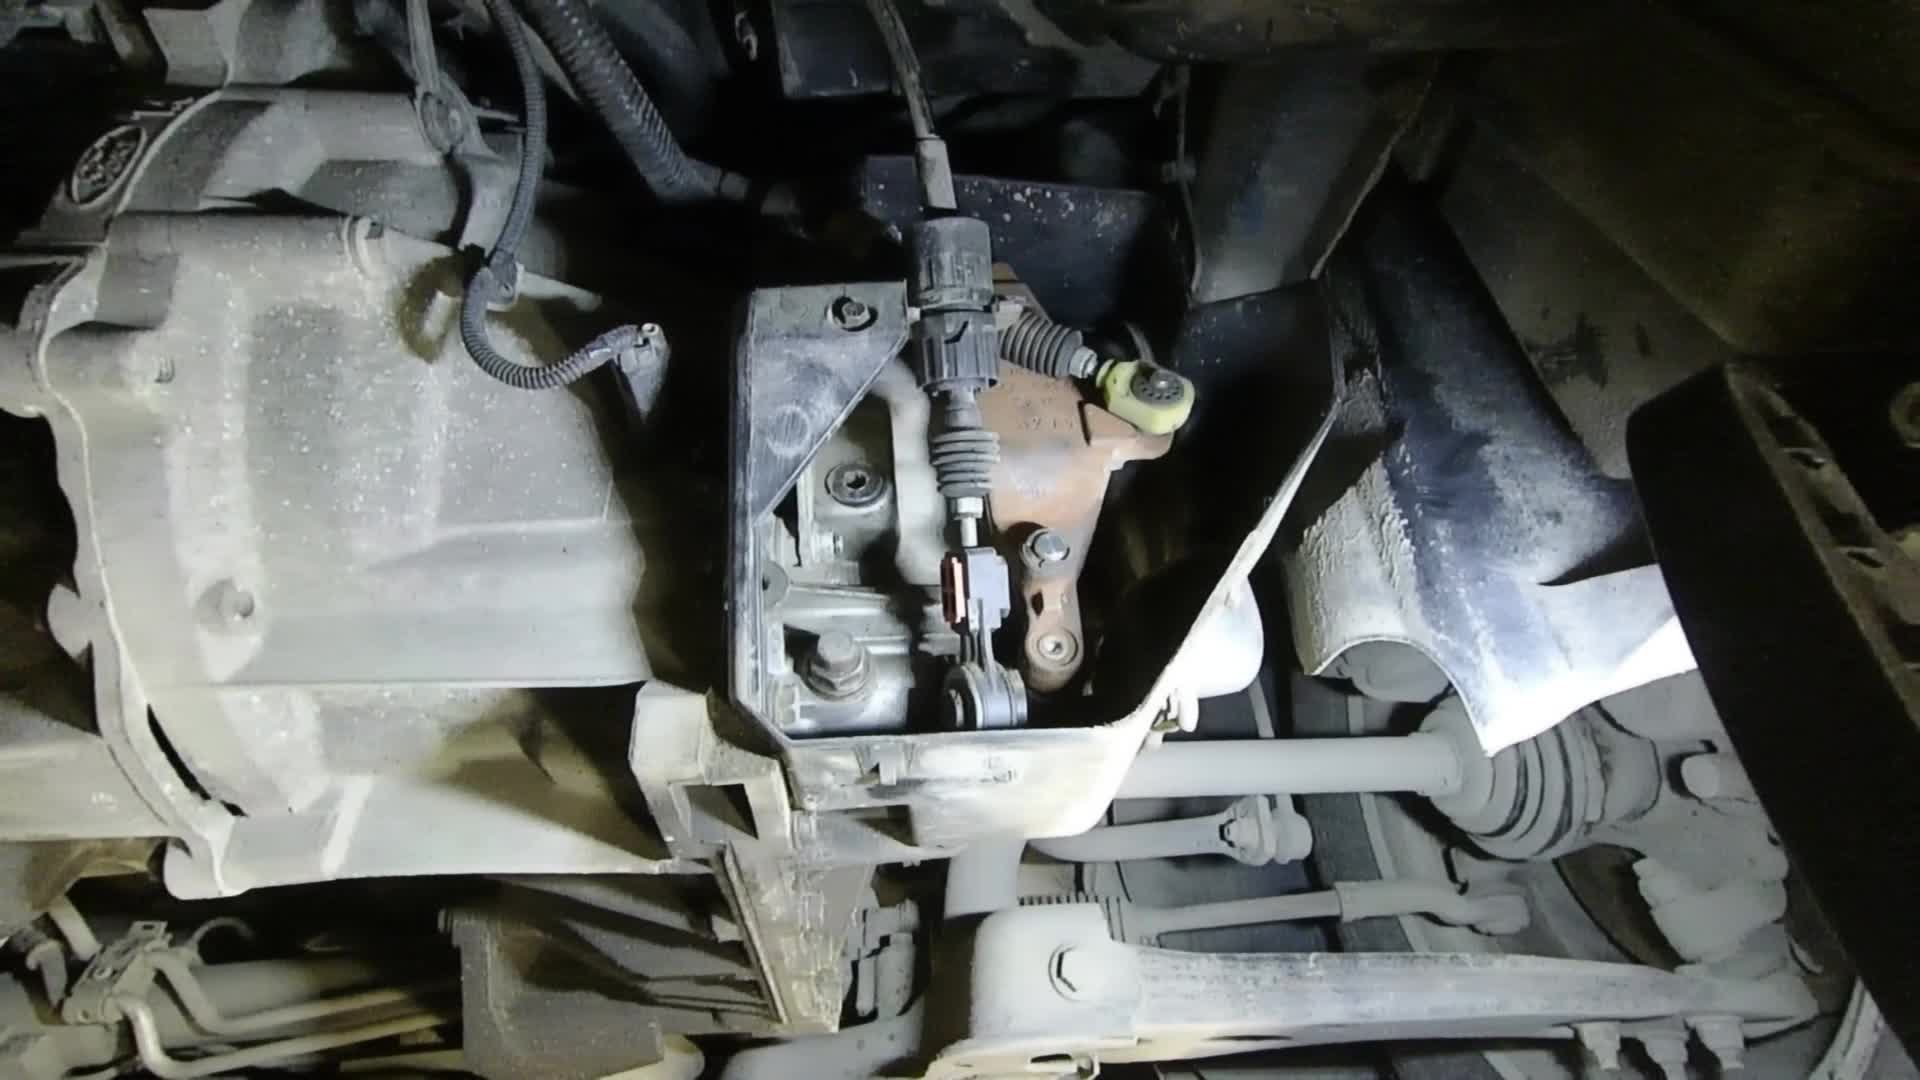 Ford Focus II 1.4, 1.6, 1.8, 2.0 масло в двигатель сколько и какого требуется?